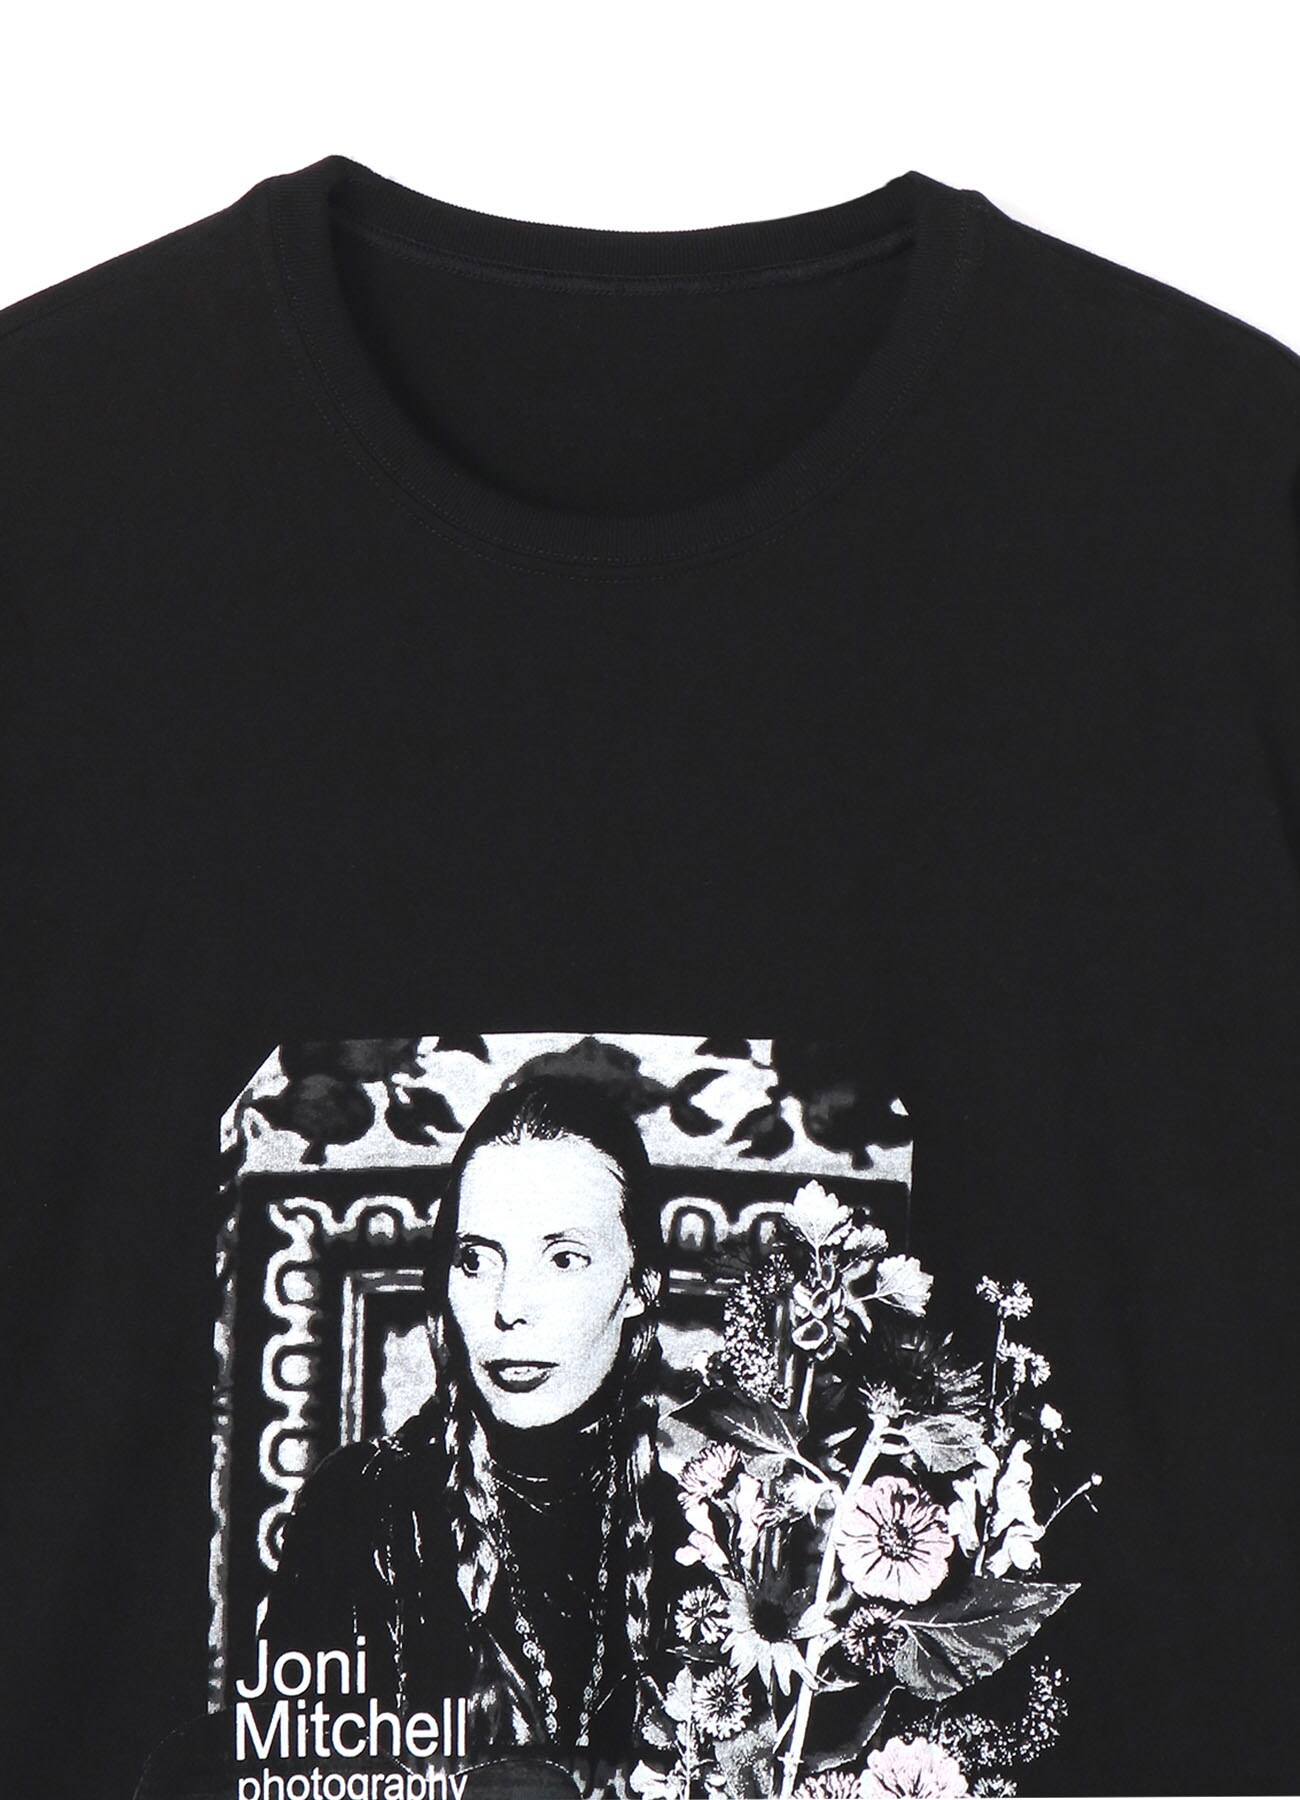 S'YTE × Dick Barnatt / Joni Mitchell T-shirt